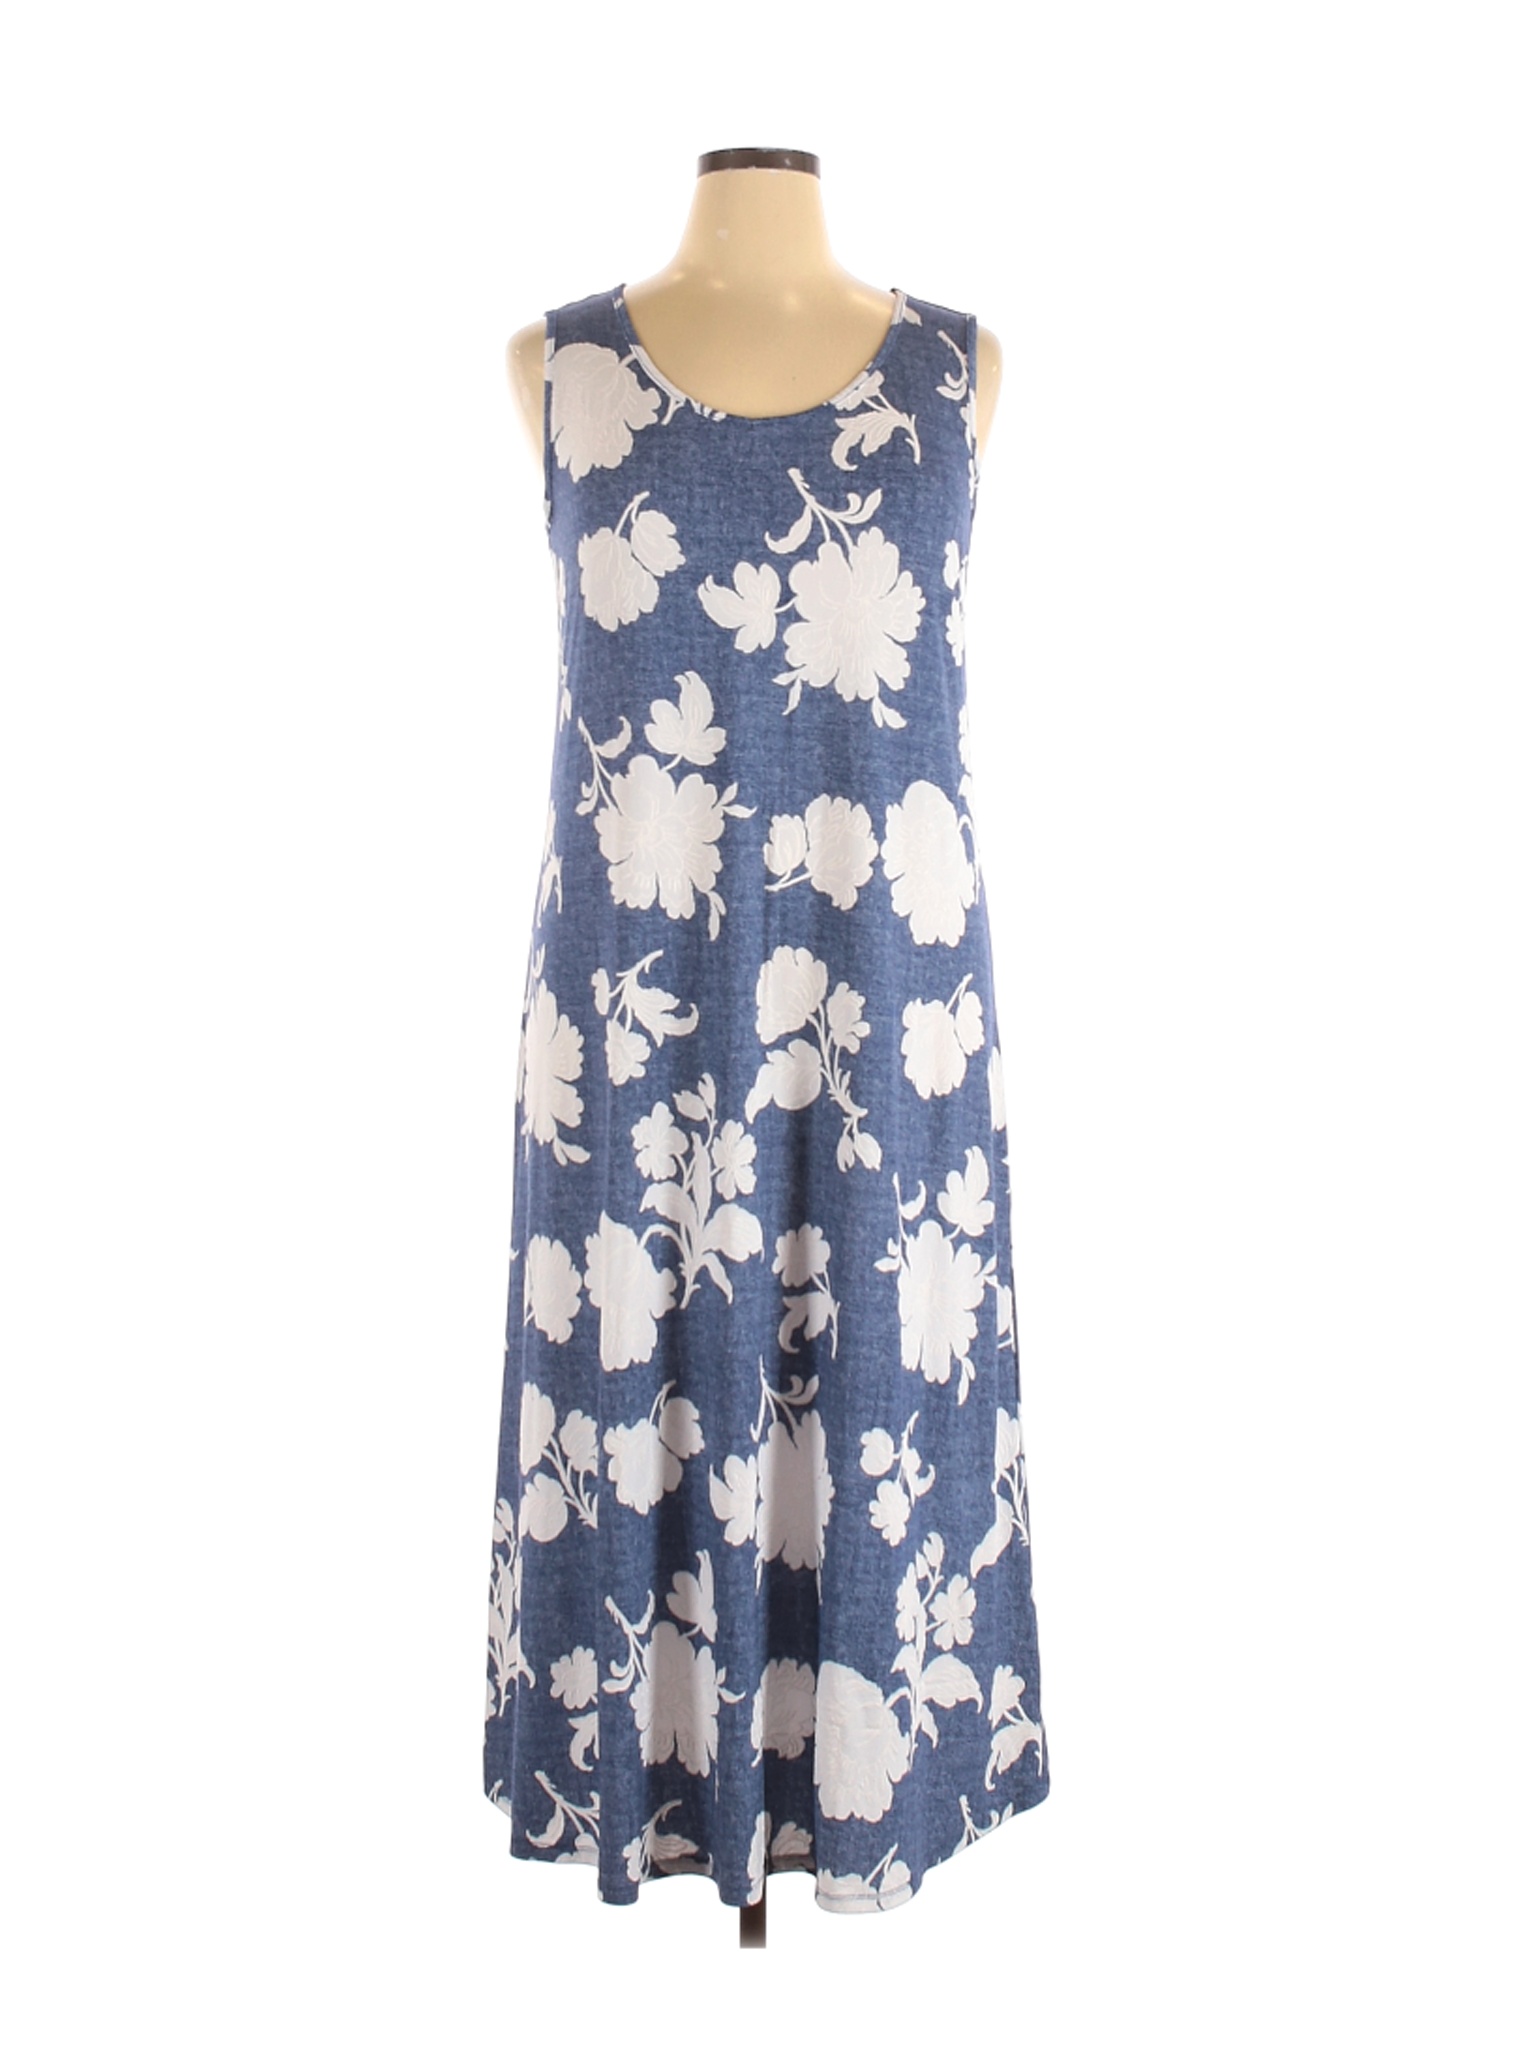 SJS Women Blue Casual Dress XL | eBay